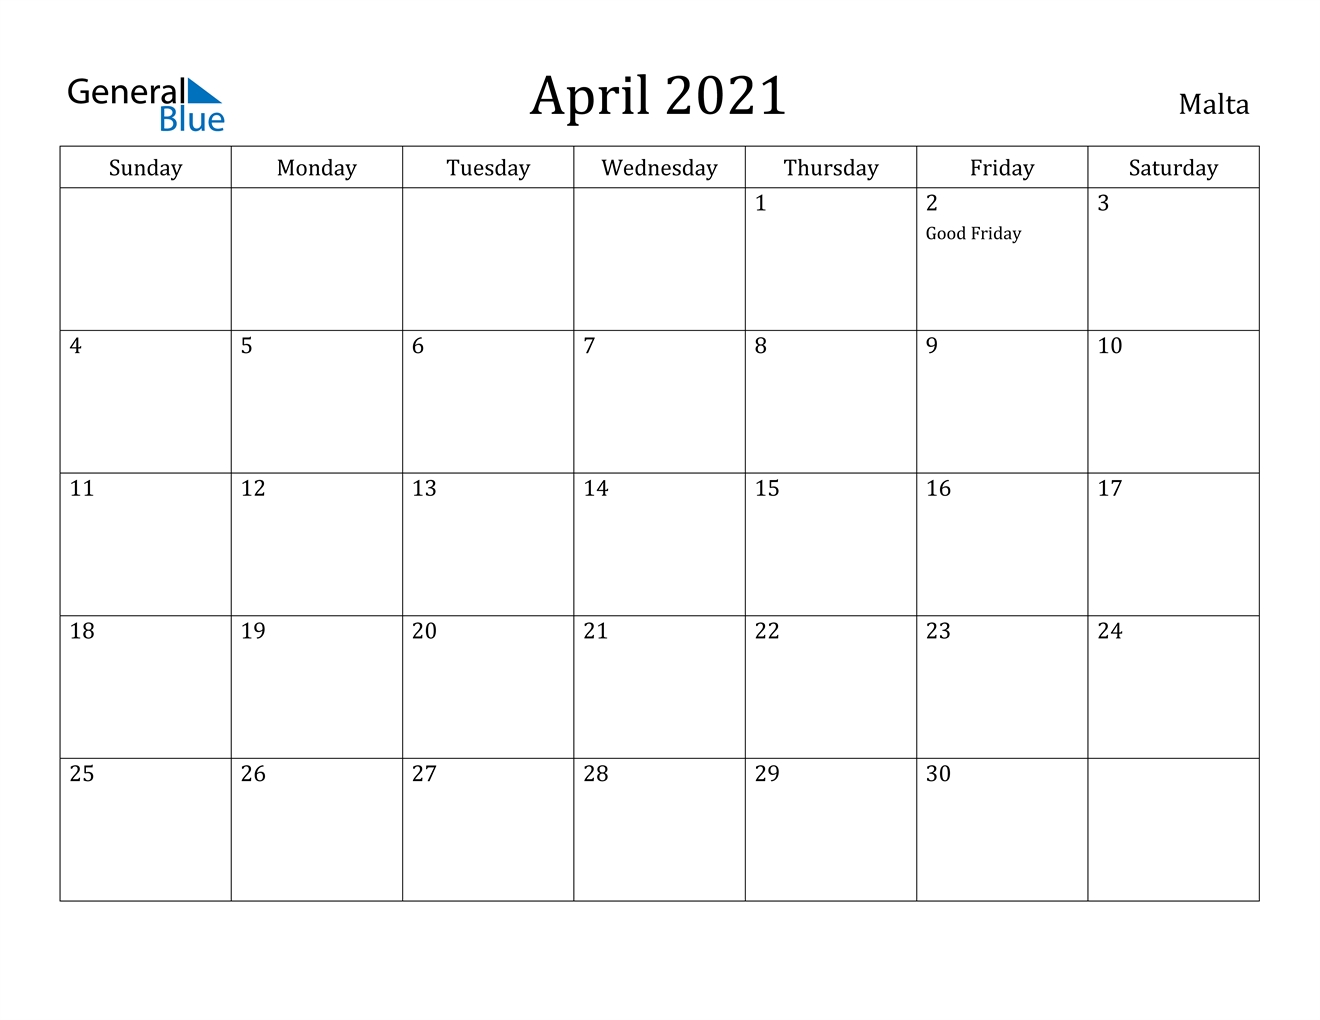 April 2021 Calendar - Malta